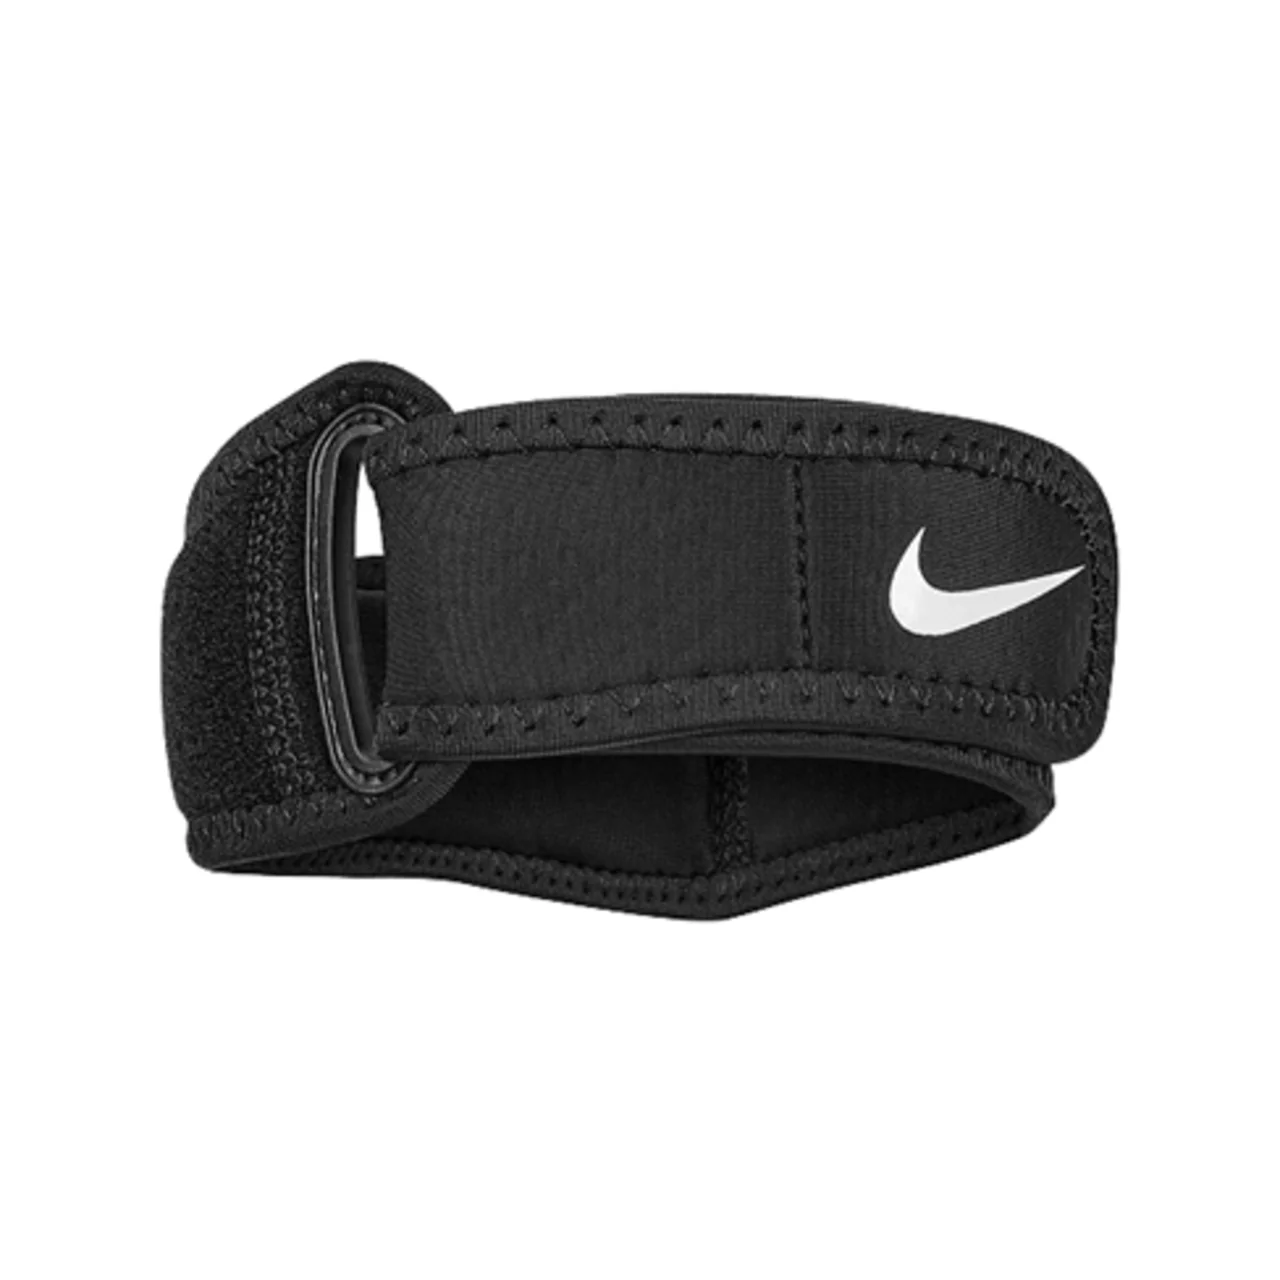 Nike Pro Elbow Band 3.0